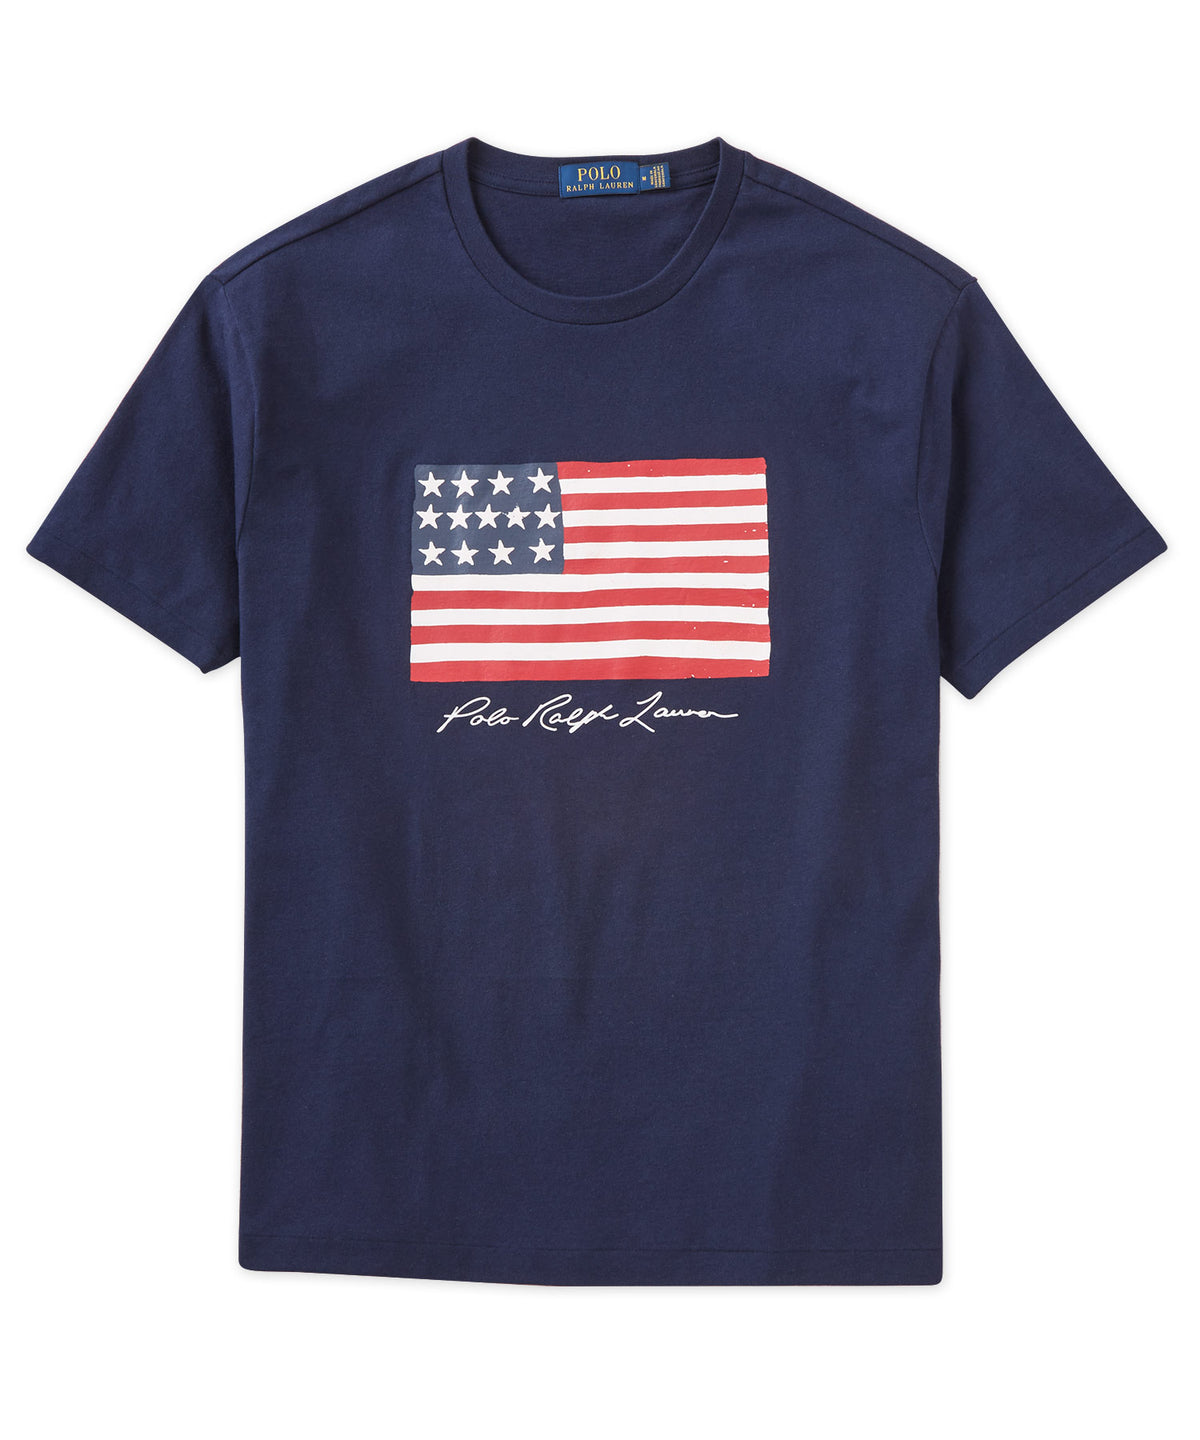 T-shirt Polo Ralph Lauren a maniche corte con bandiera americana, Men's Big & Tall